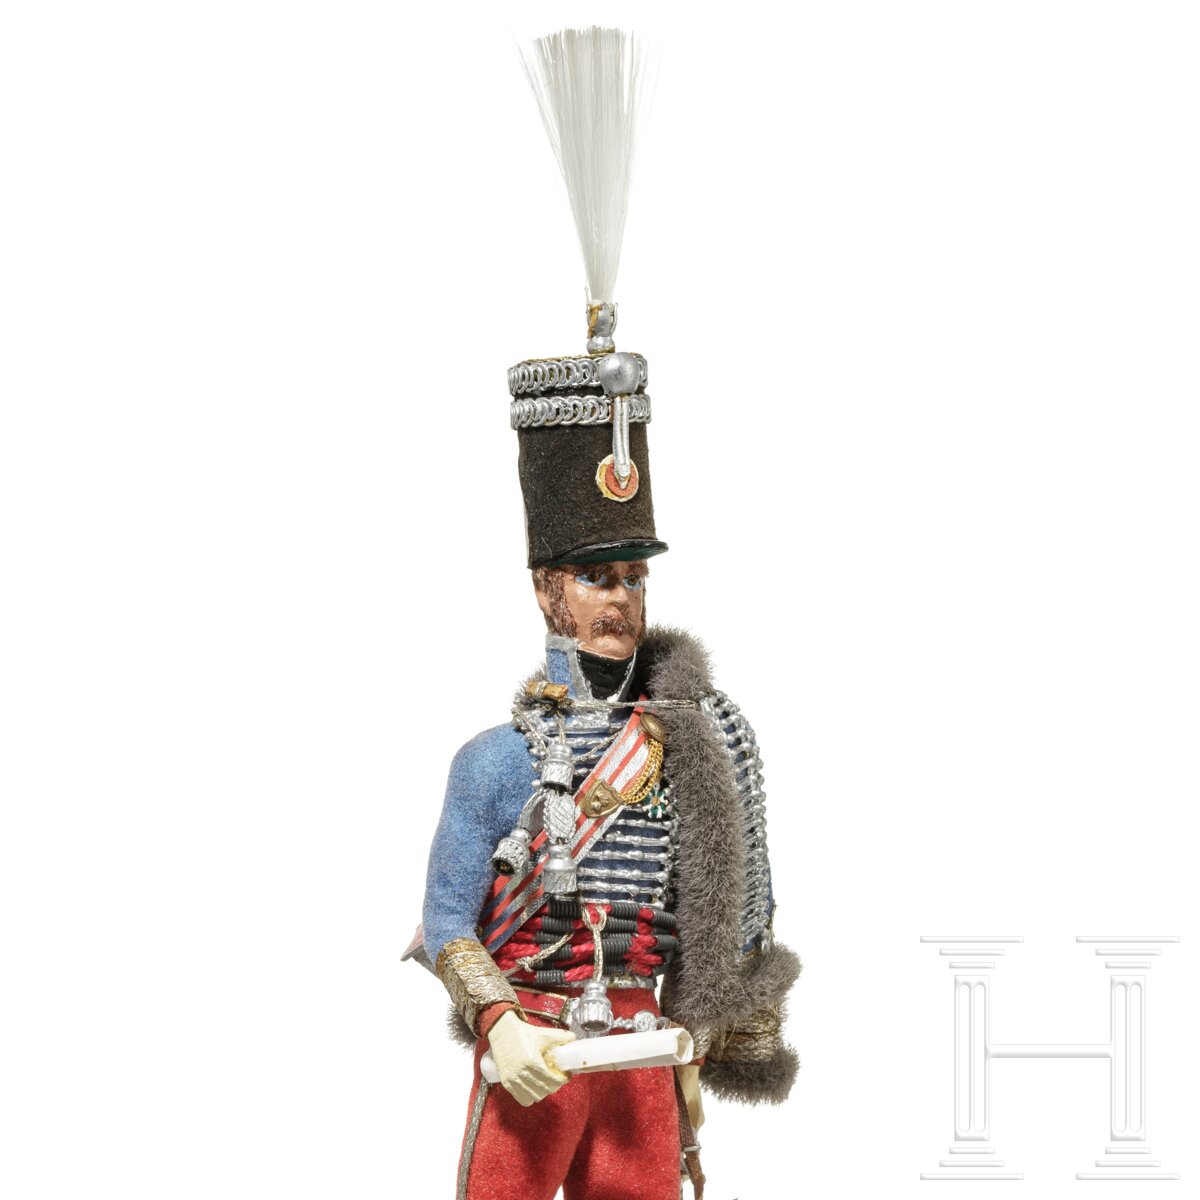 Offizier der Husaren um 1814 - Uniformfigur von Marcel Riffet, 20. Jhdt. - Image 5 of 5